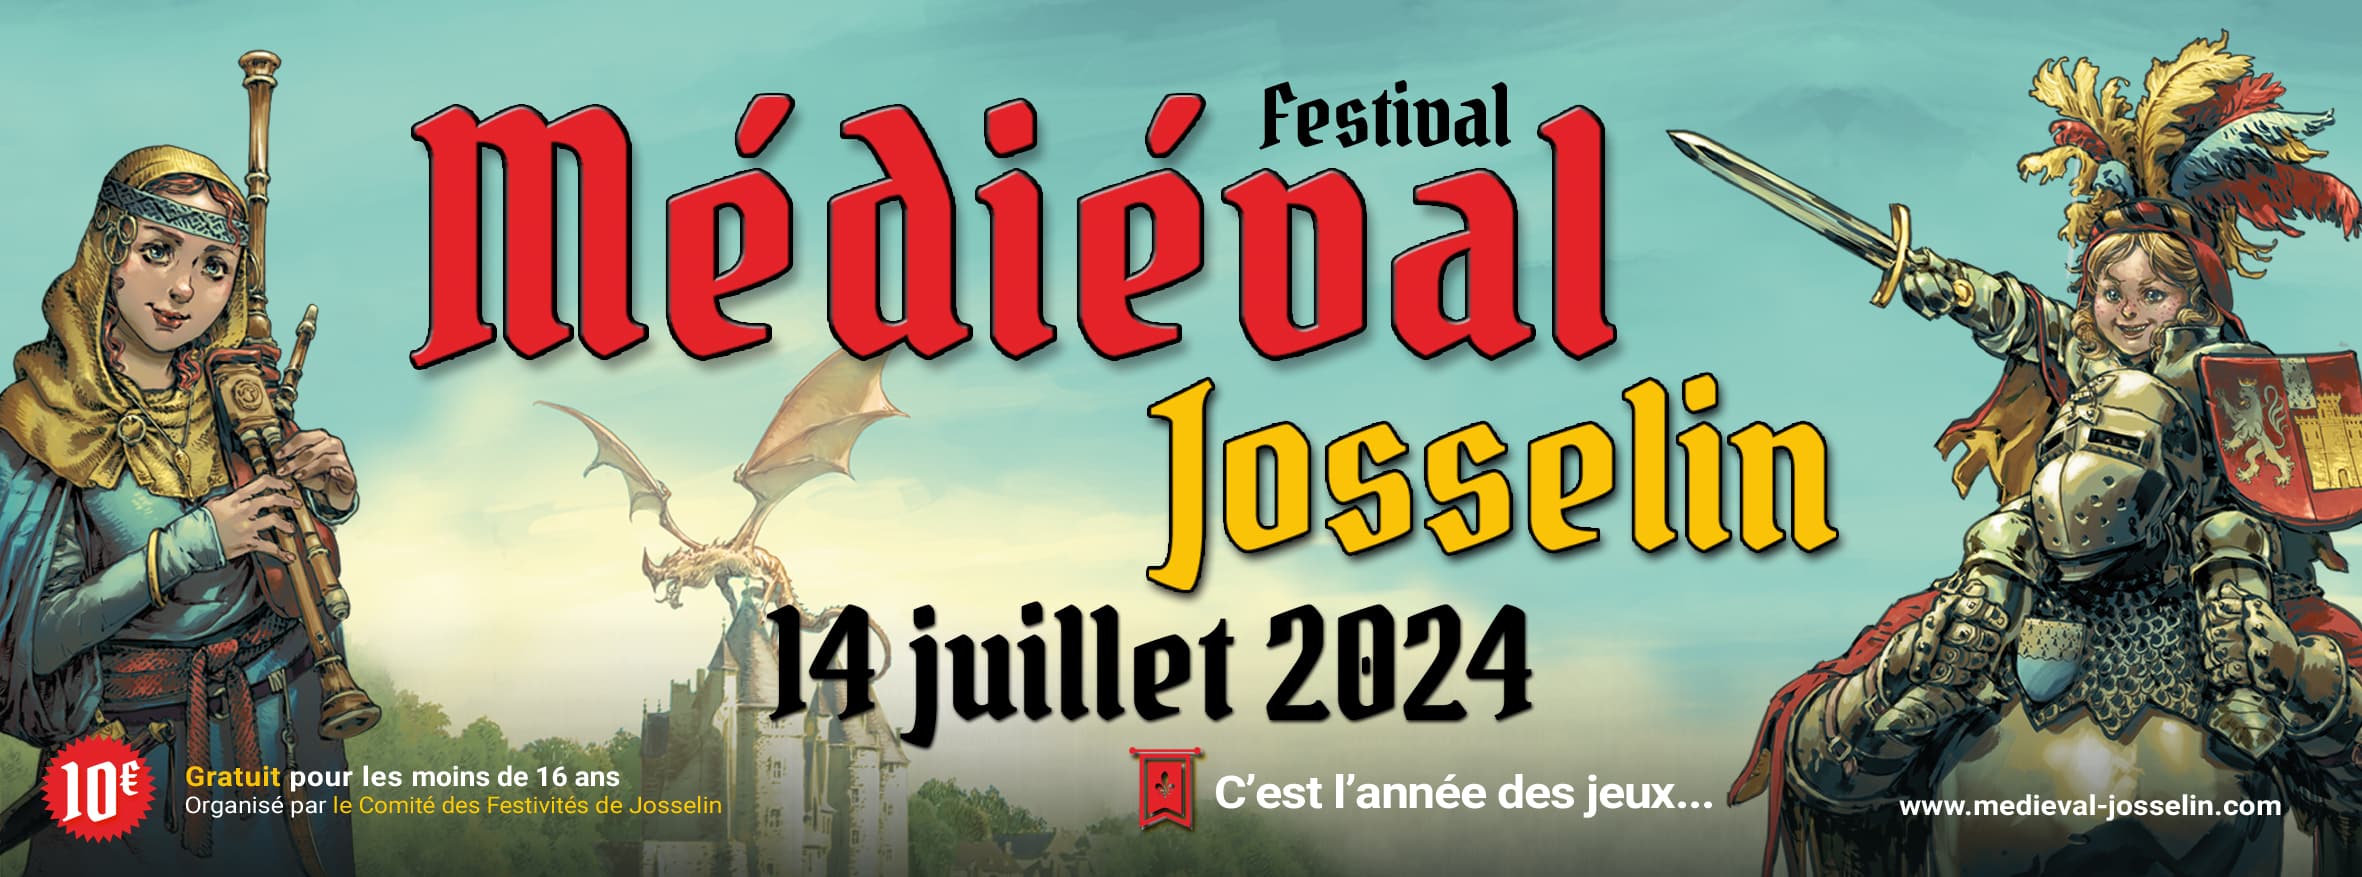 Festival Médiéval de Josselin, 14 juillet 2024 à Josselin (56)